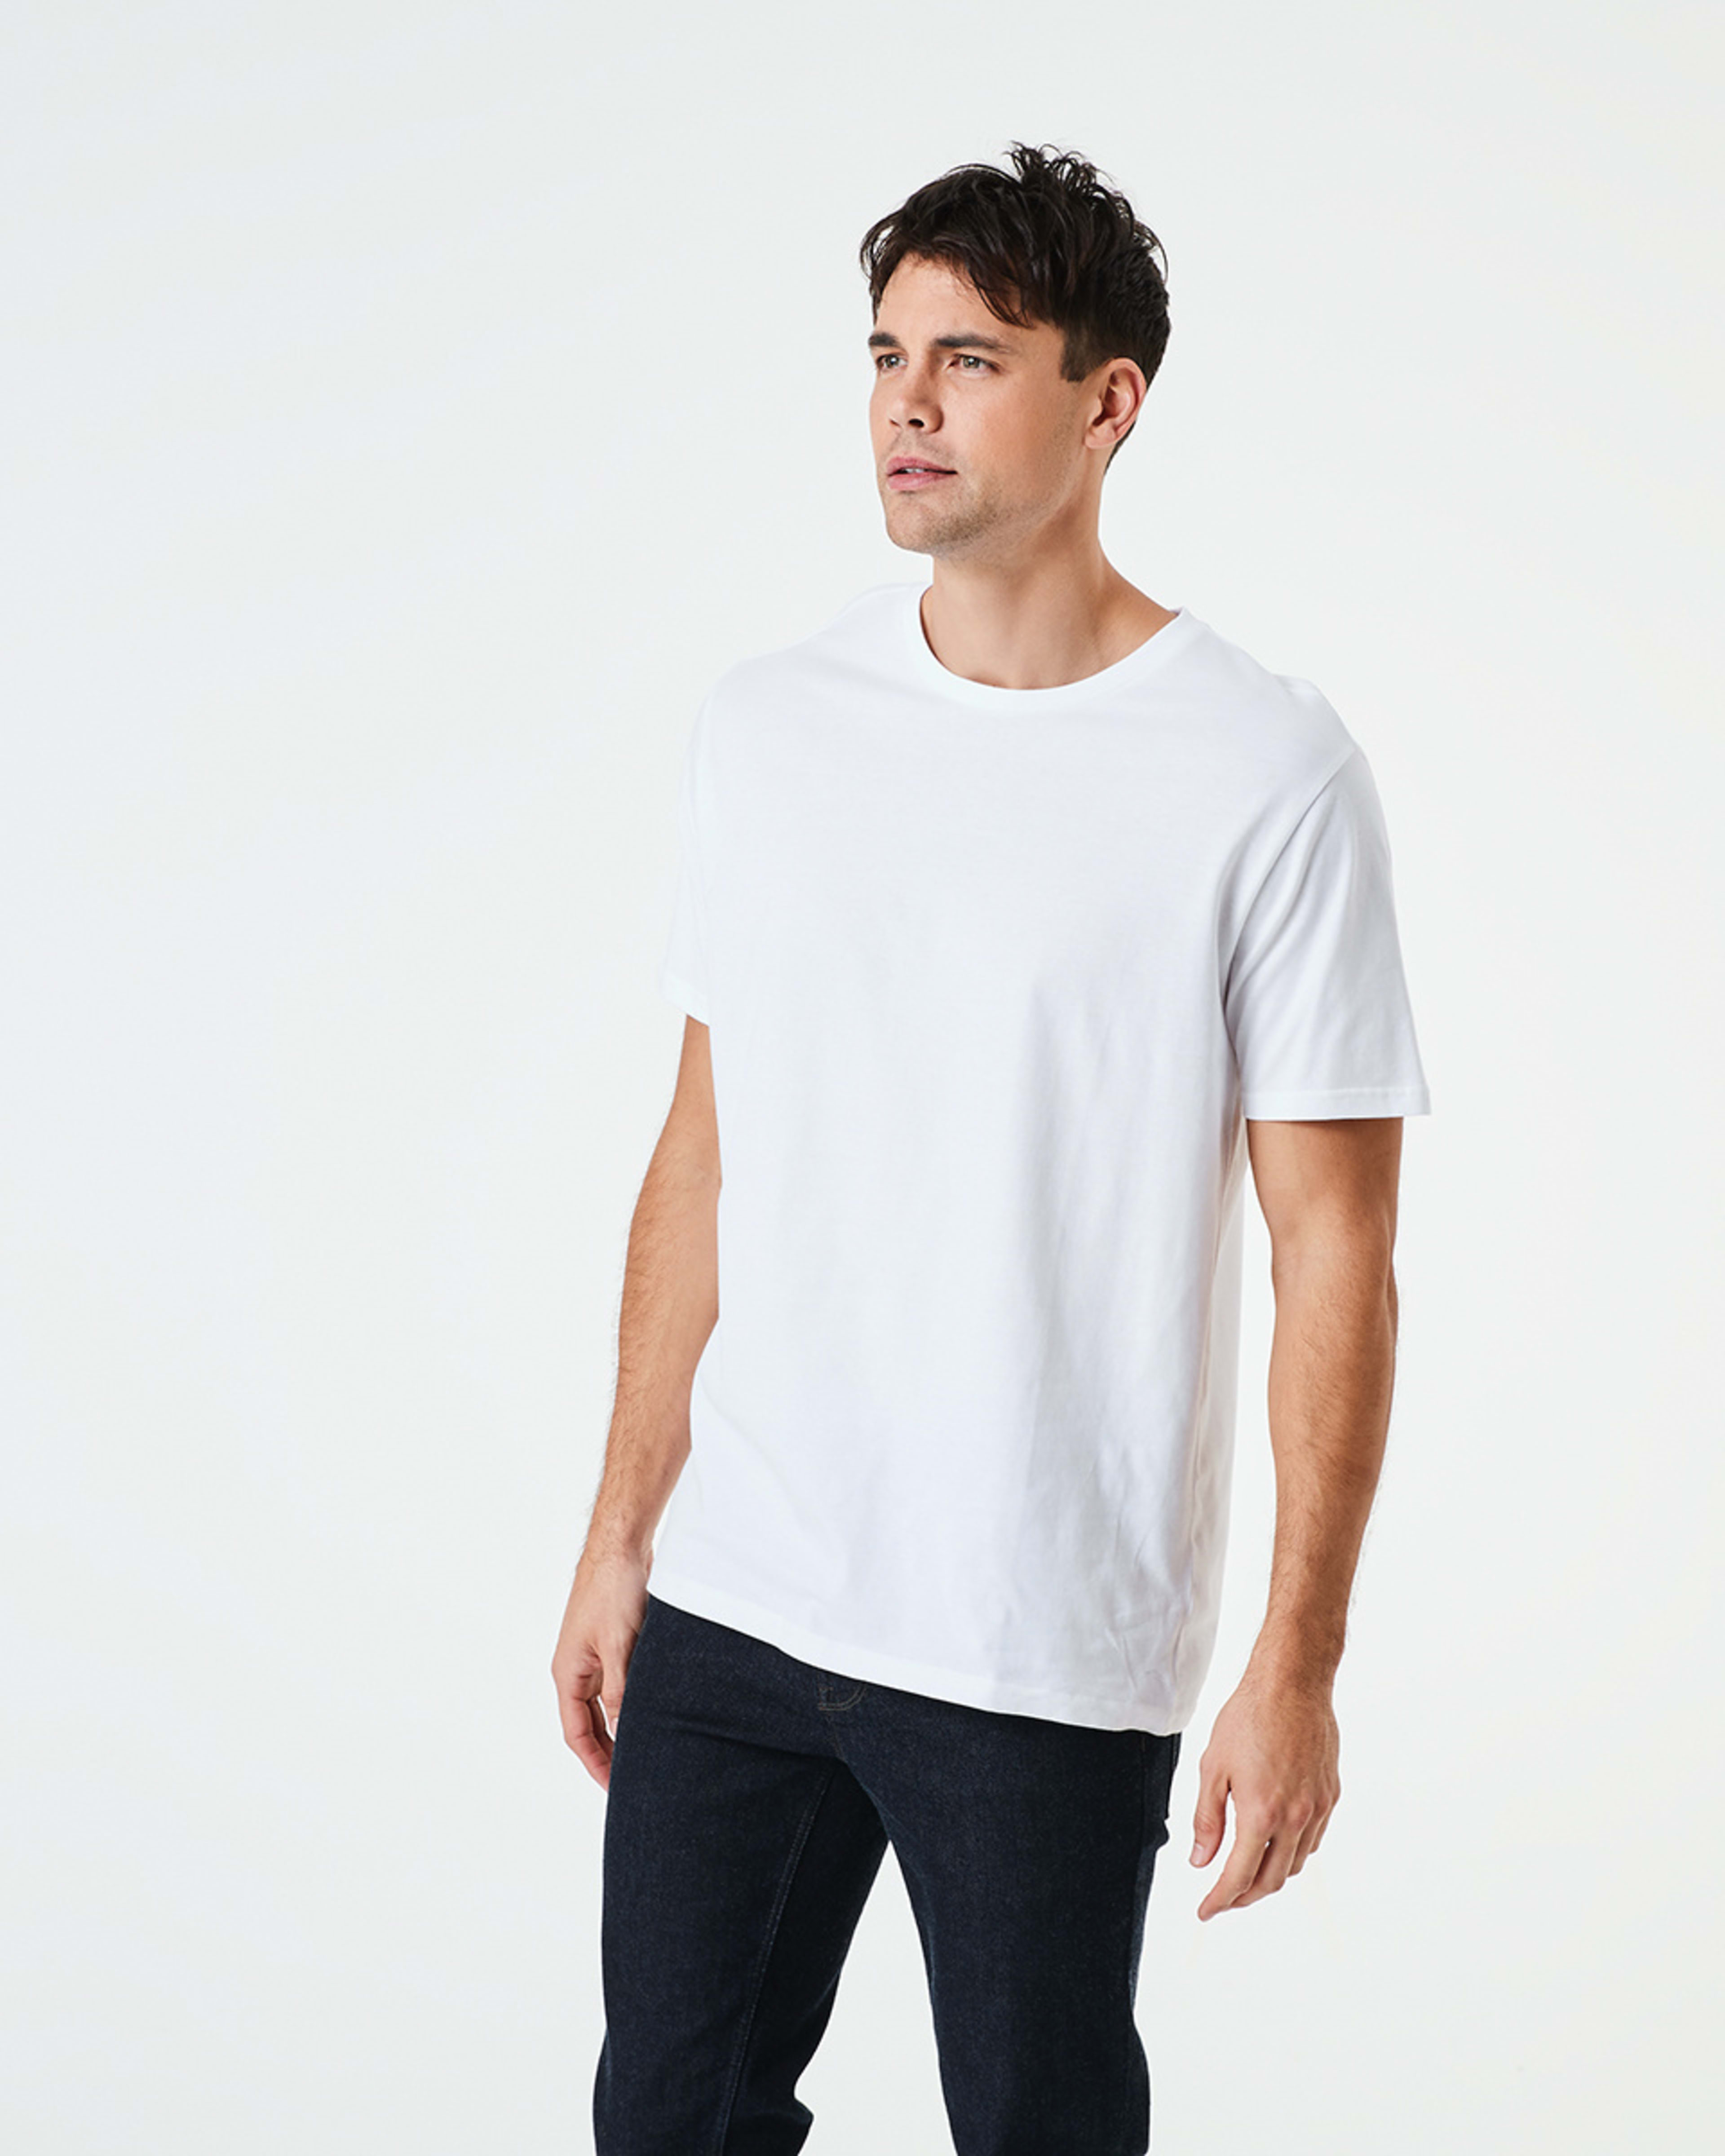 Australian Grown Cotton Crew Neck T-shirt - Kmart NZ